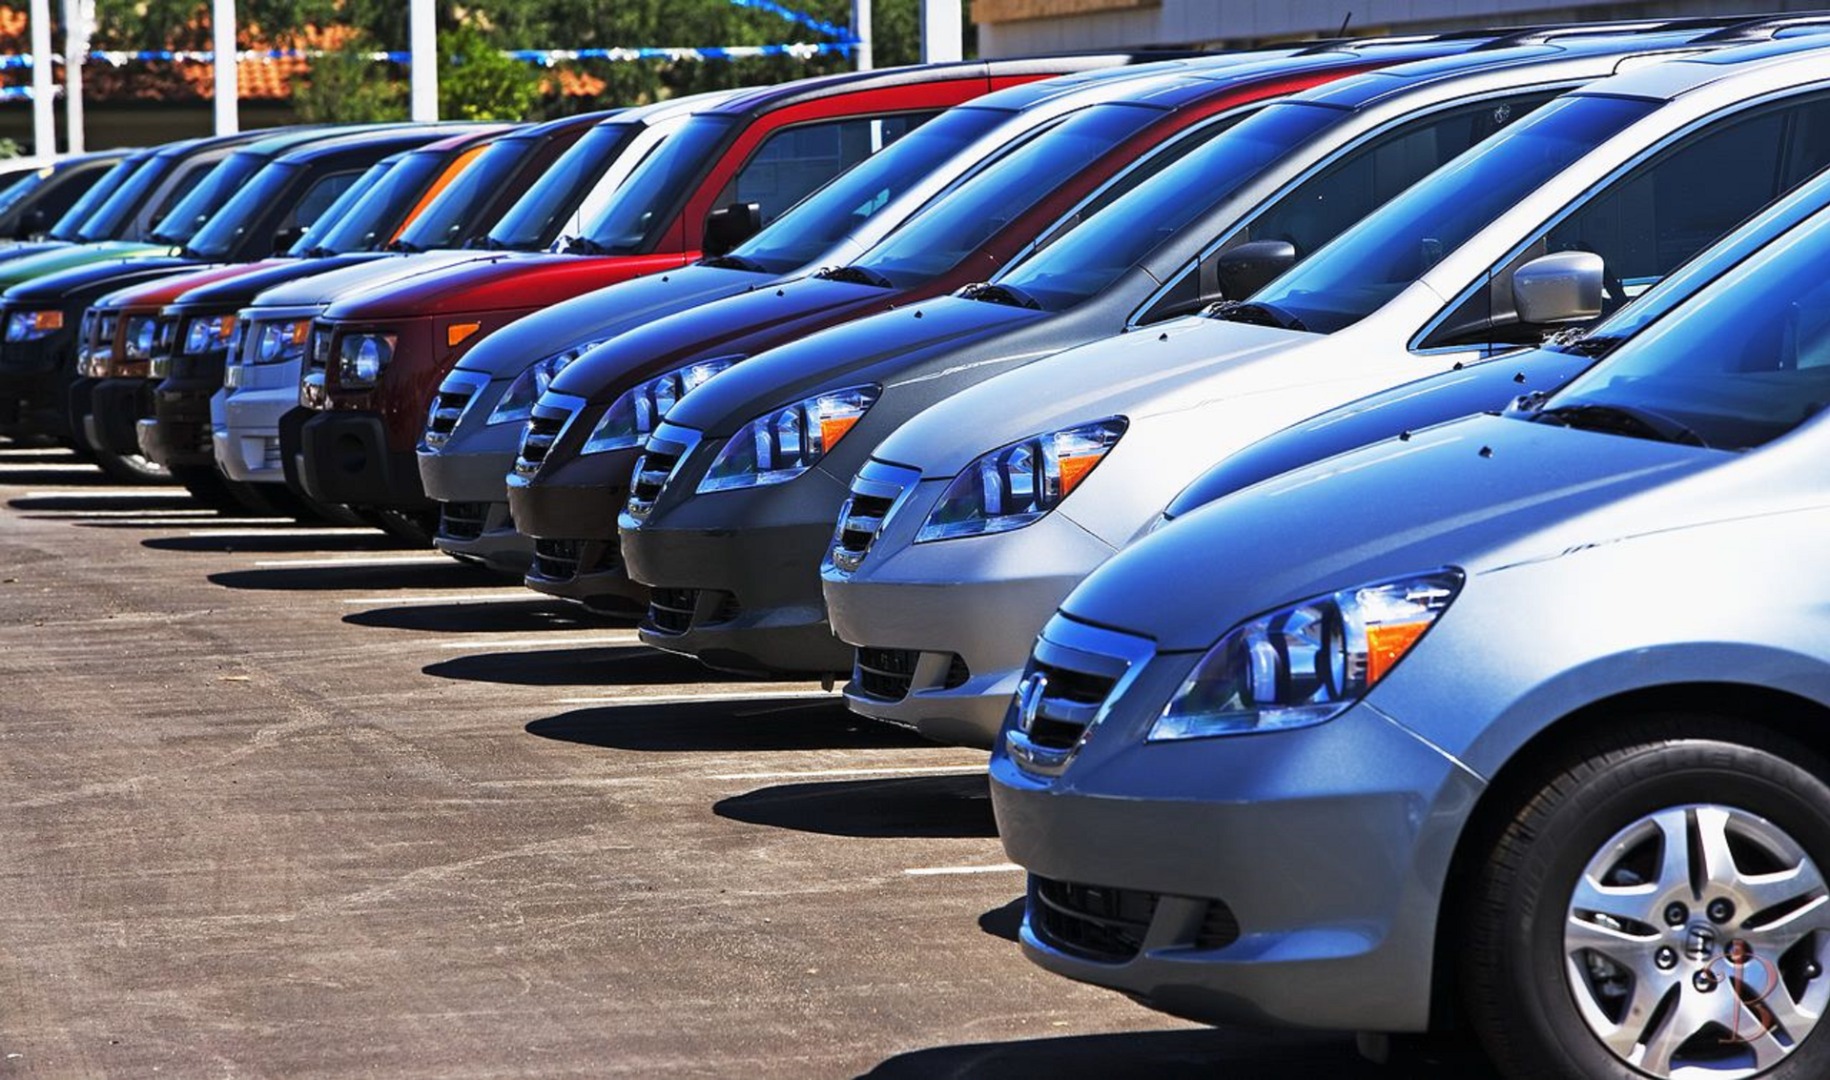 Uzmanlar: Otomobil fiyatlarında büyük düşüş olacak, bekleyin!